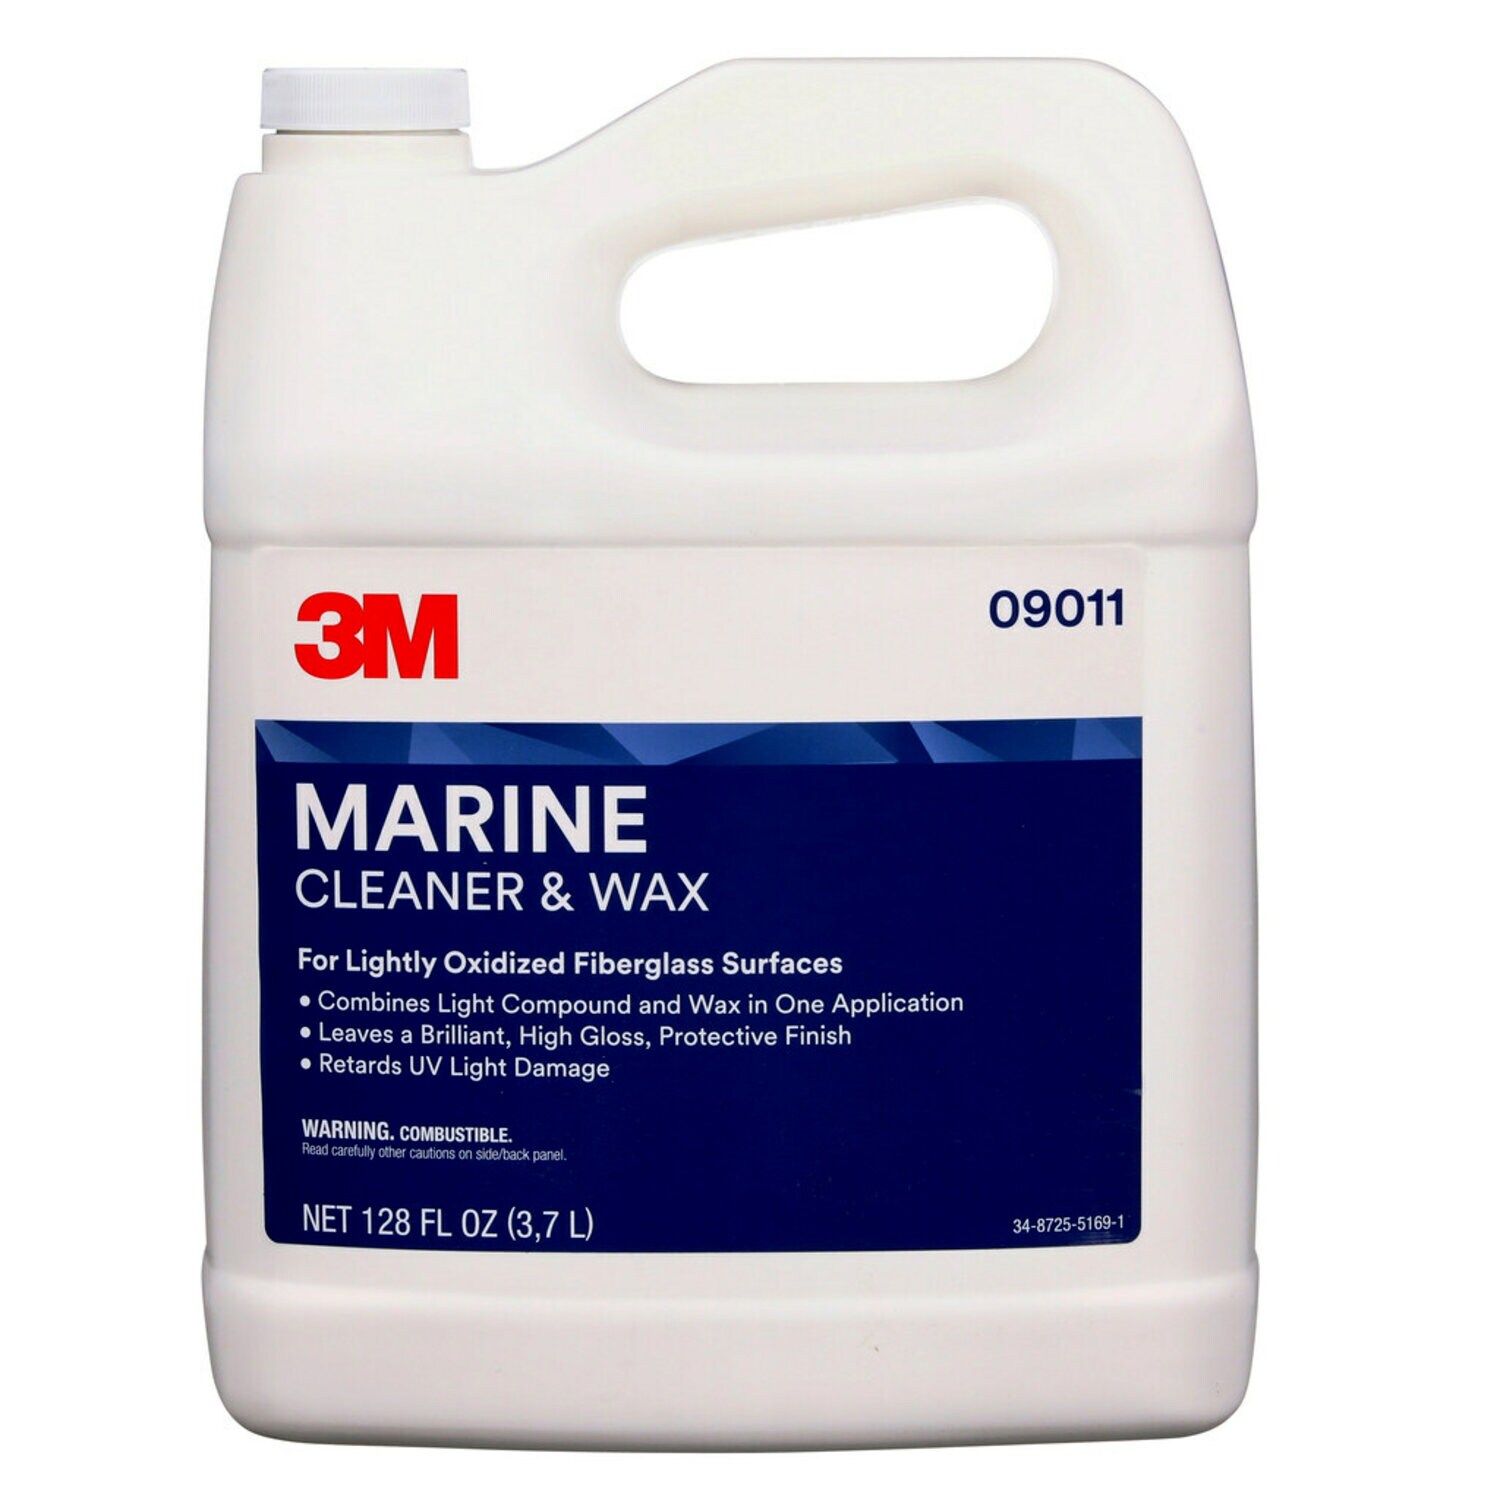 7100142902 - 3M Marine Fiberglass Cleaner and Wax, 9011, 1 gal, 2 per case